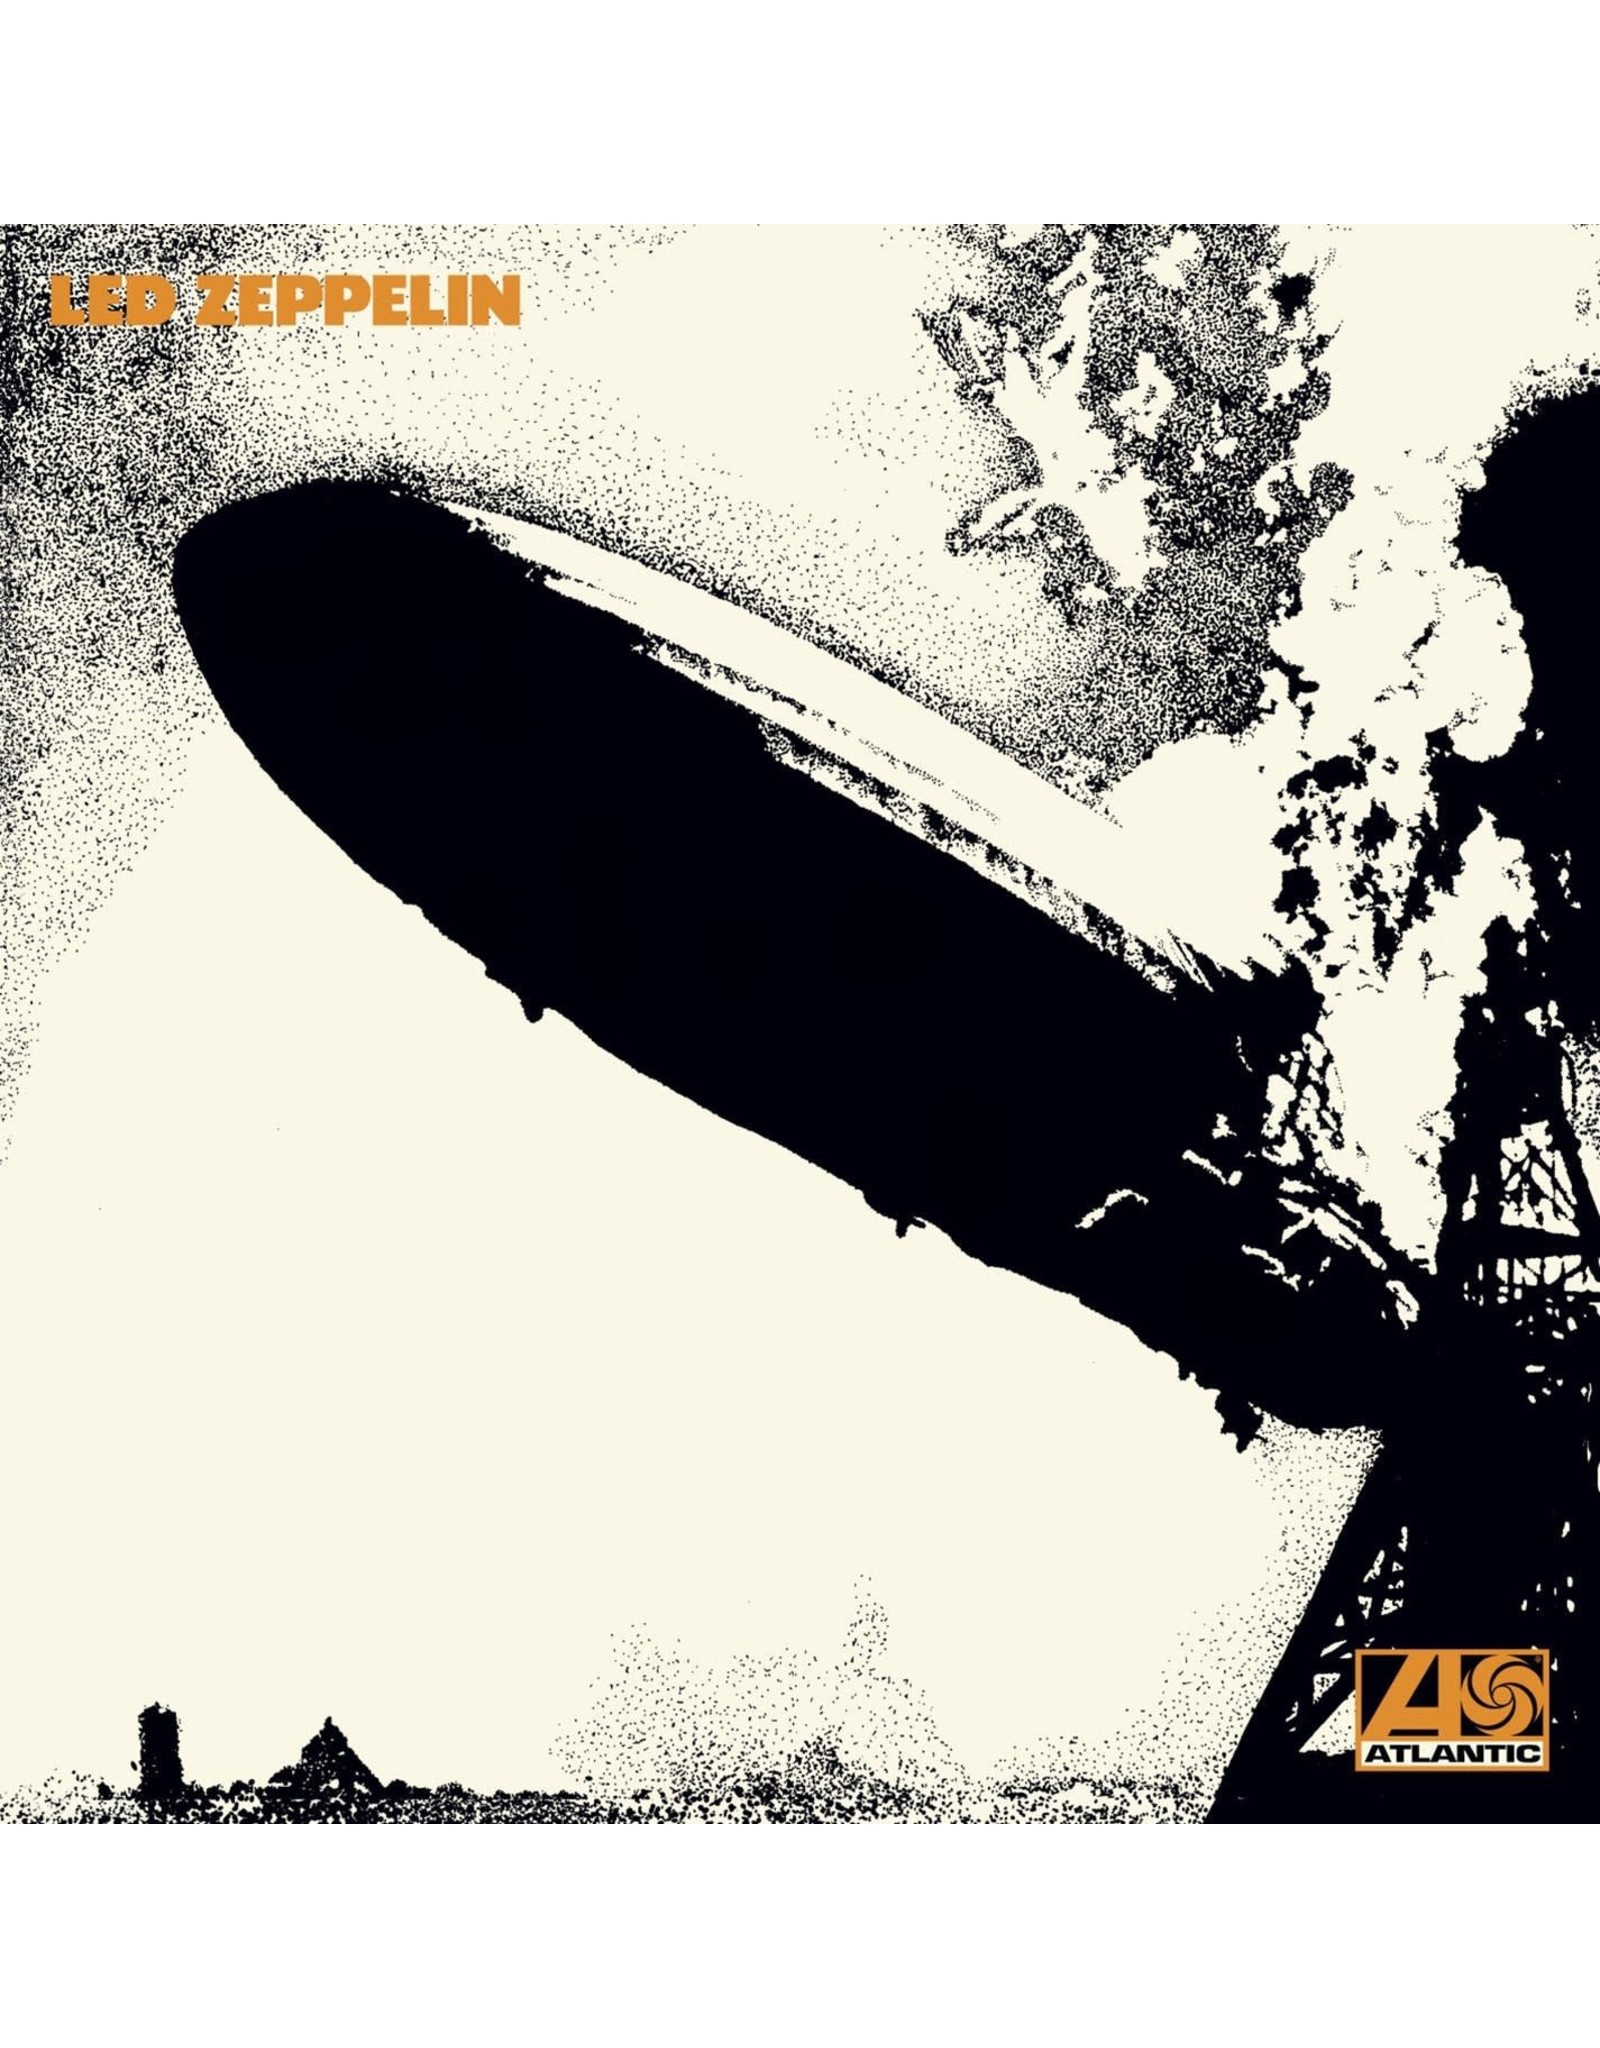 Led Zeppelin - Led Zeppelin I (2014 Remaster)